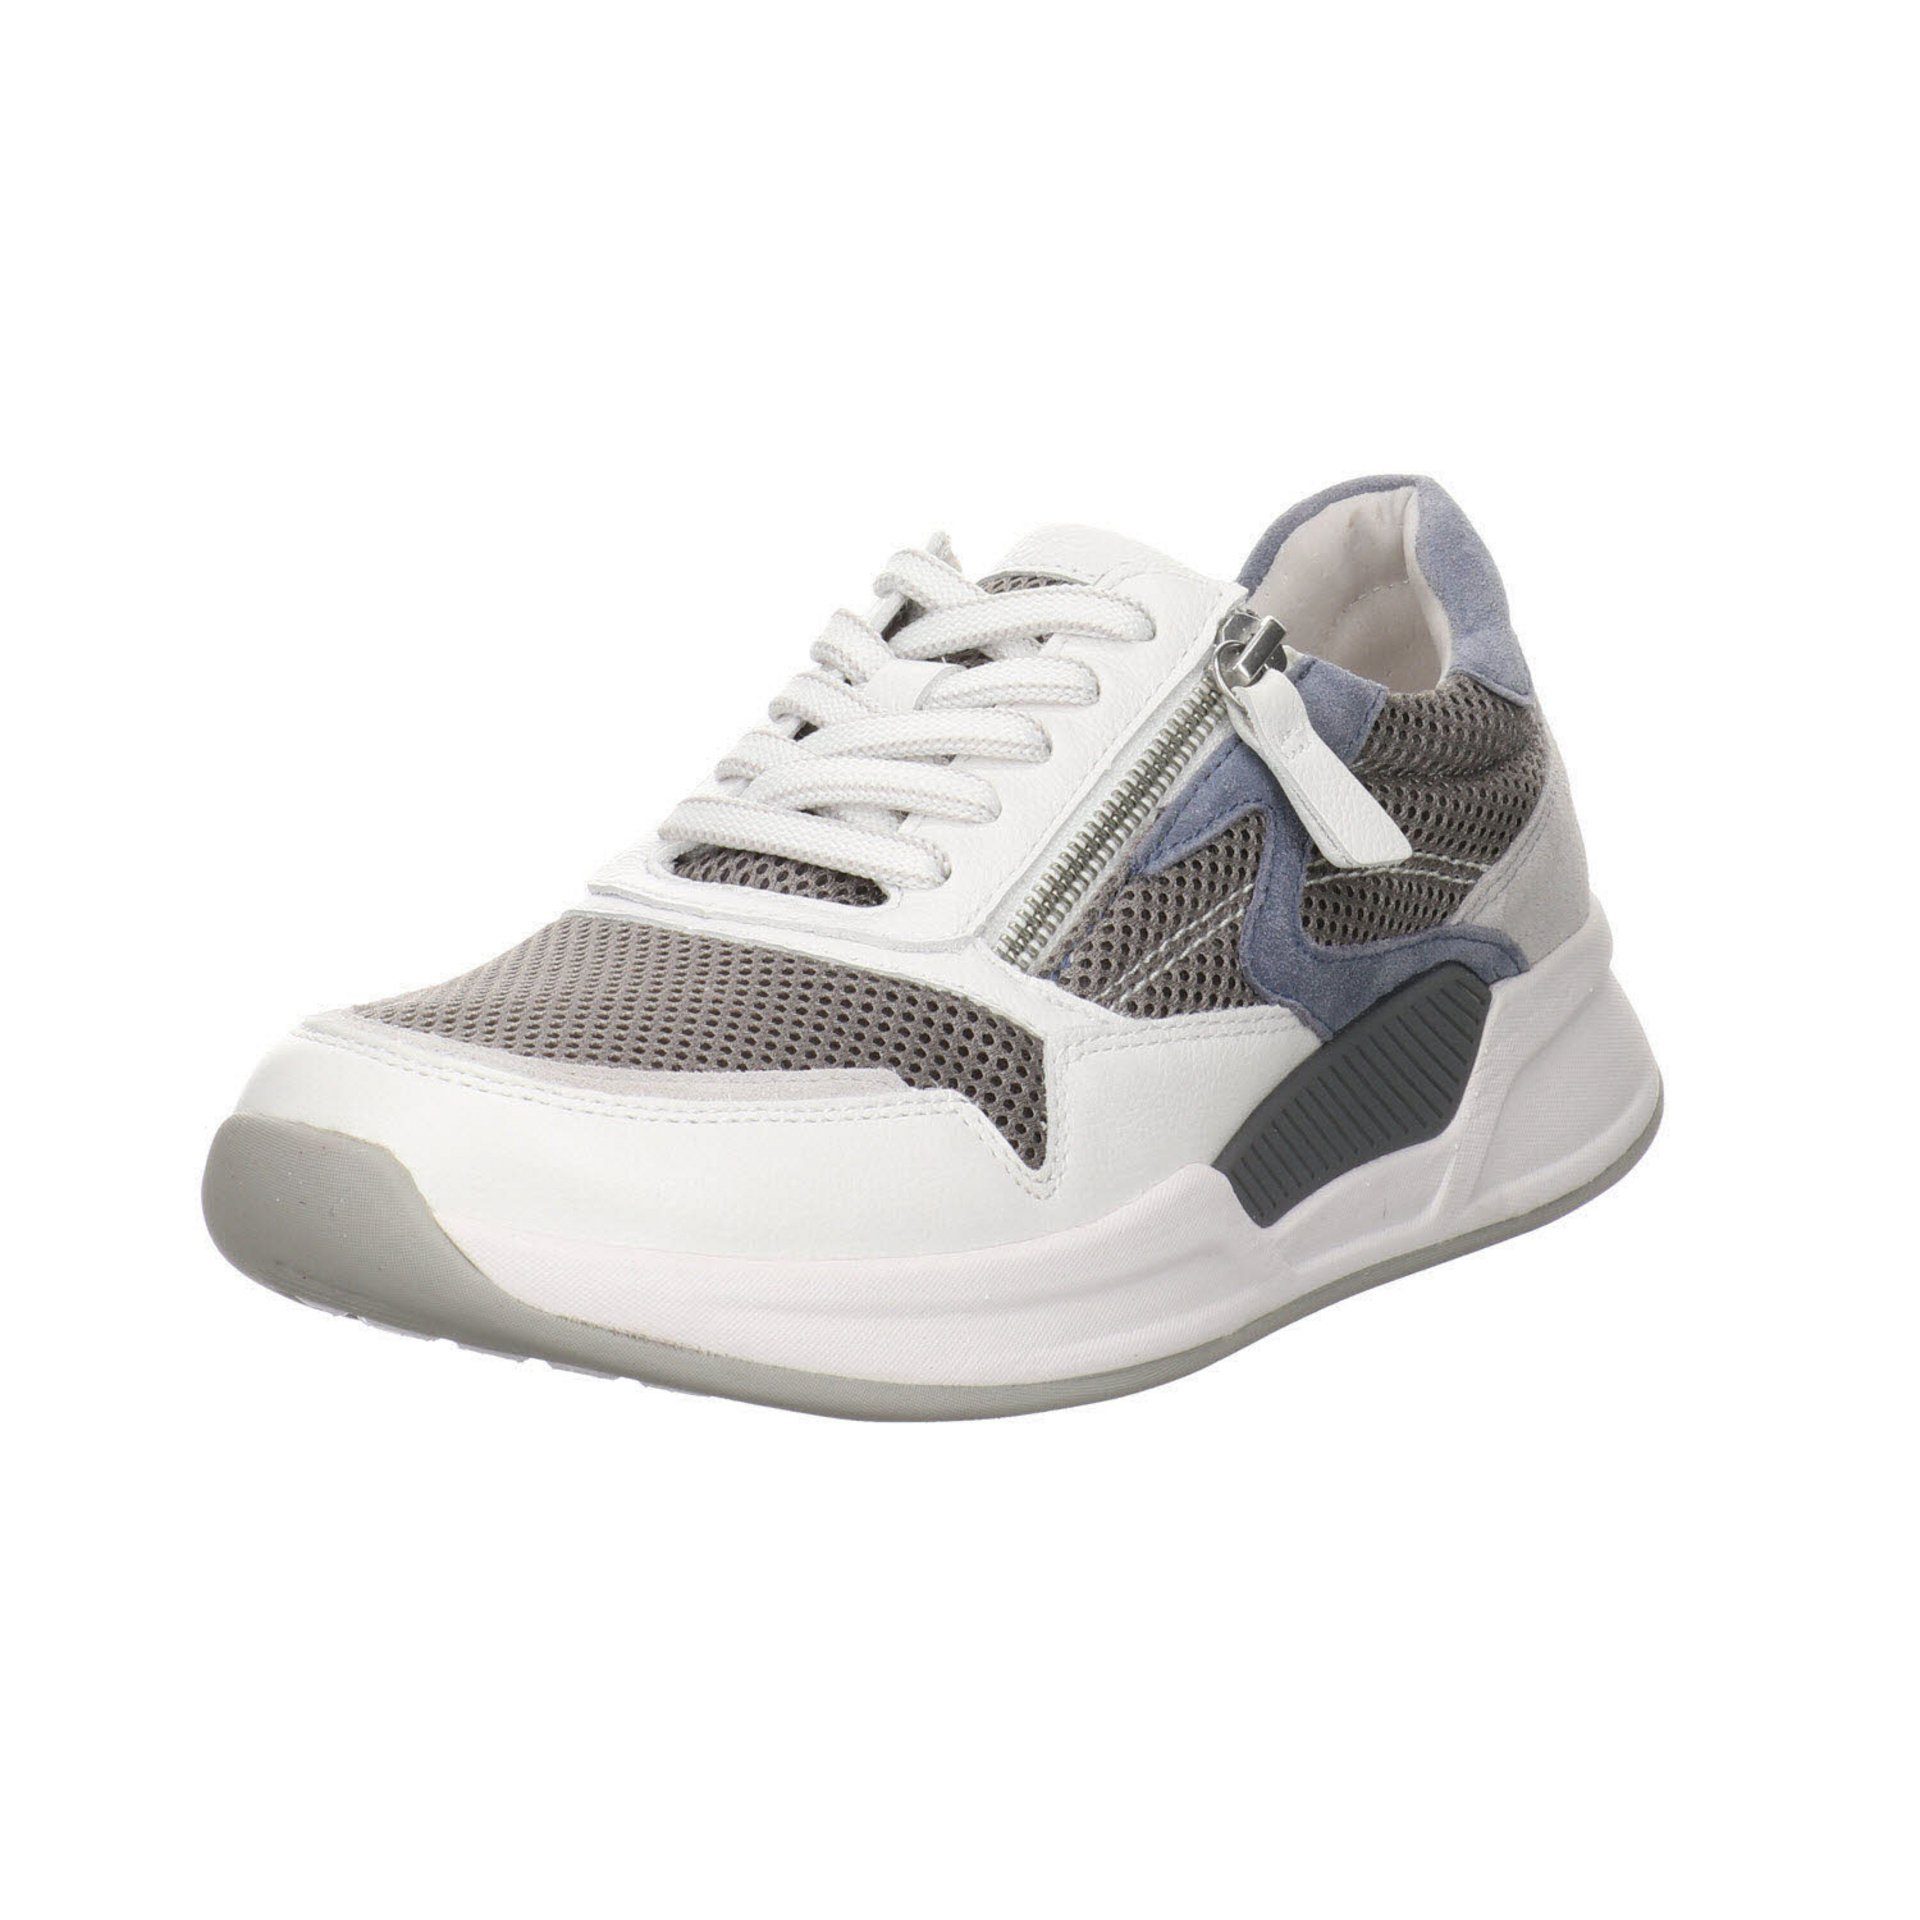 Schnürschuh grau/weiss/nautic Gabor Damen / Leder-/Textilkombination Schuhe Sneaker Sneaker Rollingsoft 41